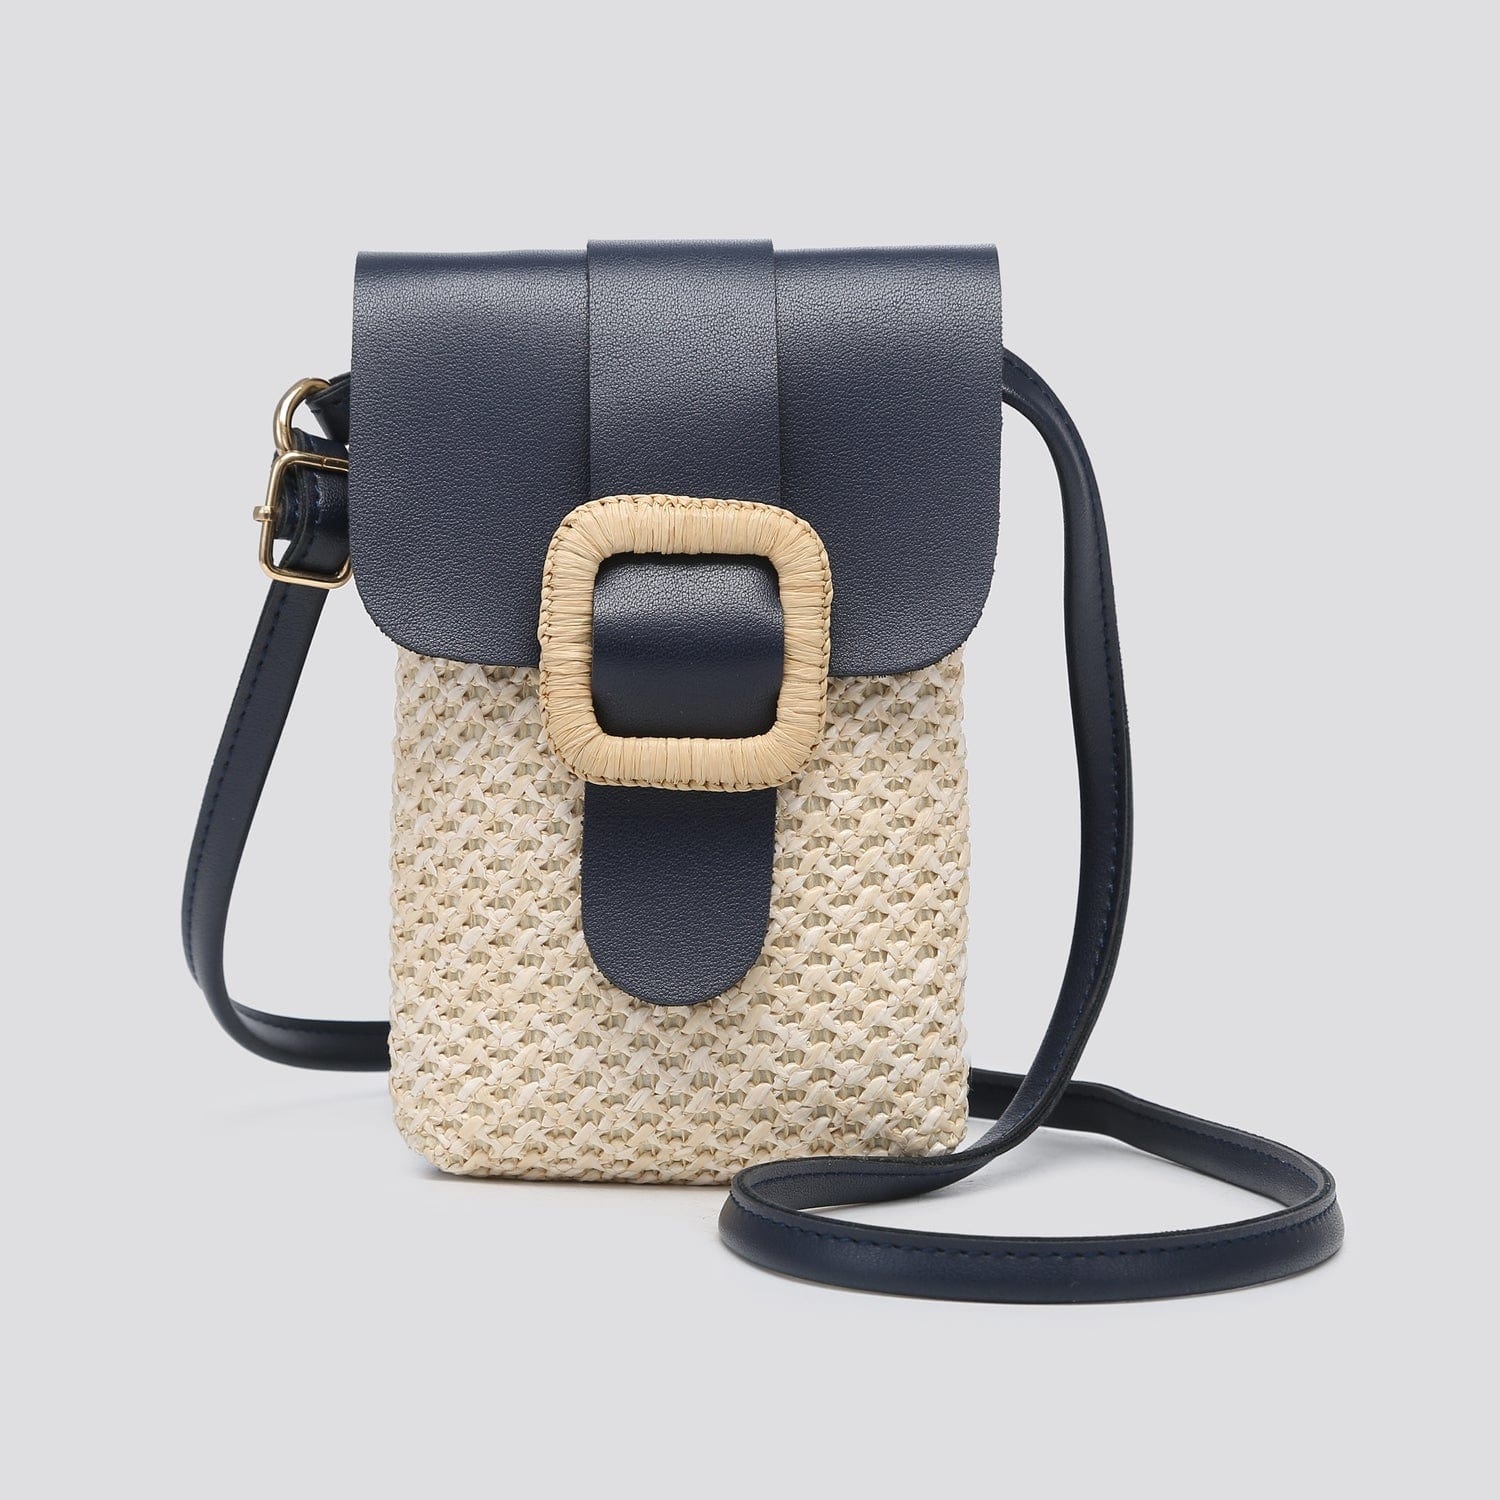 lusciousscarves Handbags Navy Crossbody Phone Pouch , Woven Design Small Bag